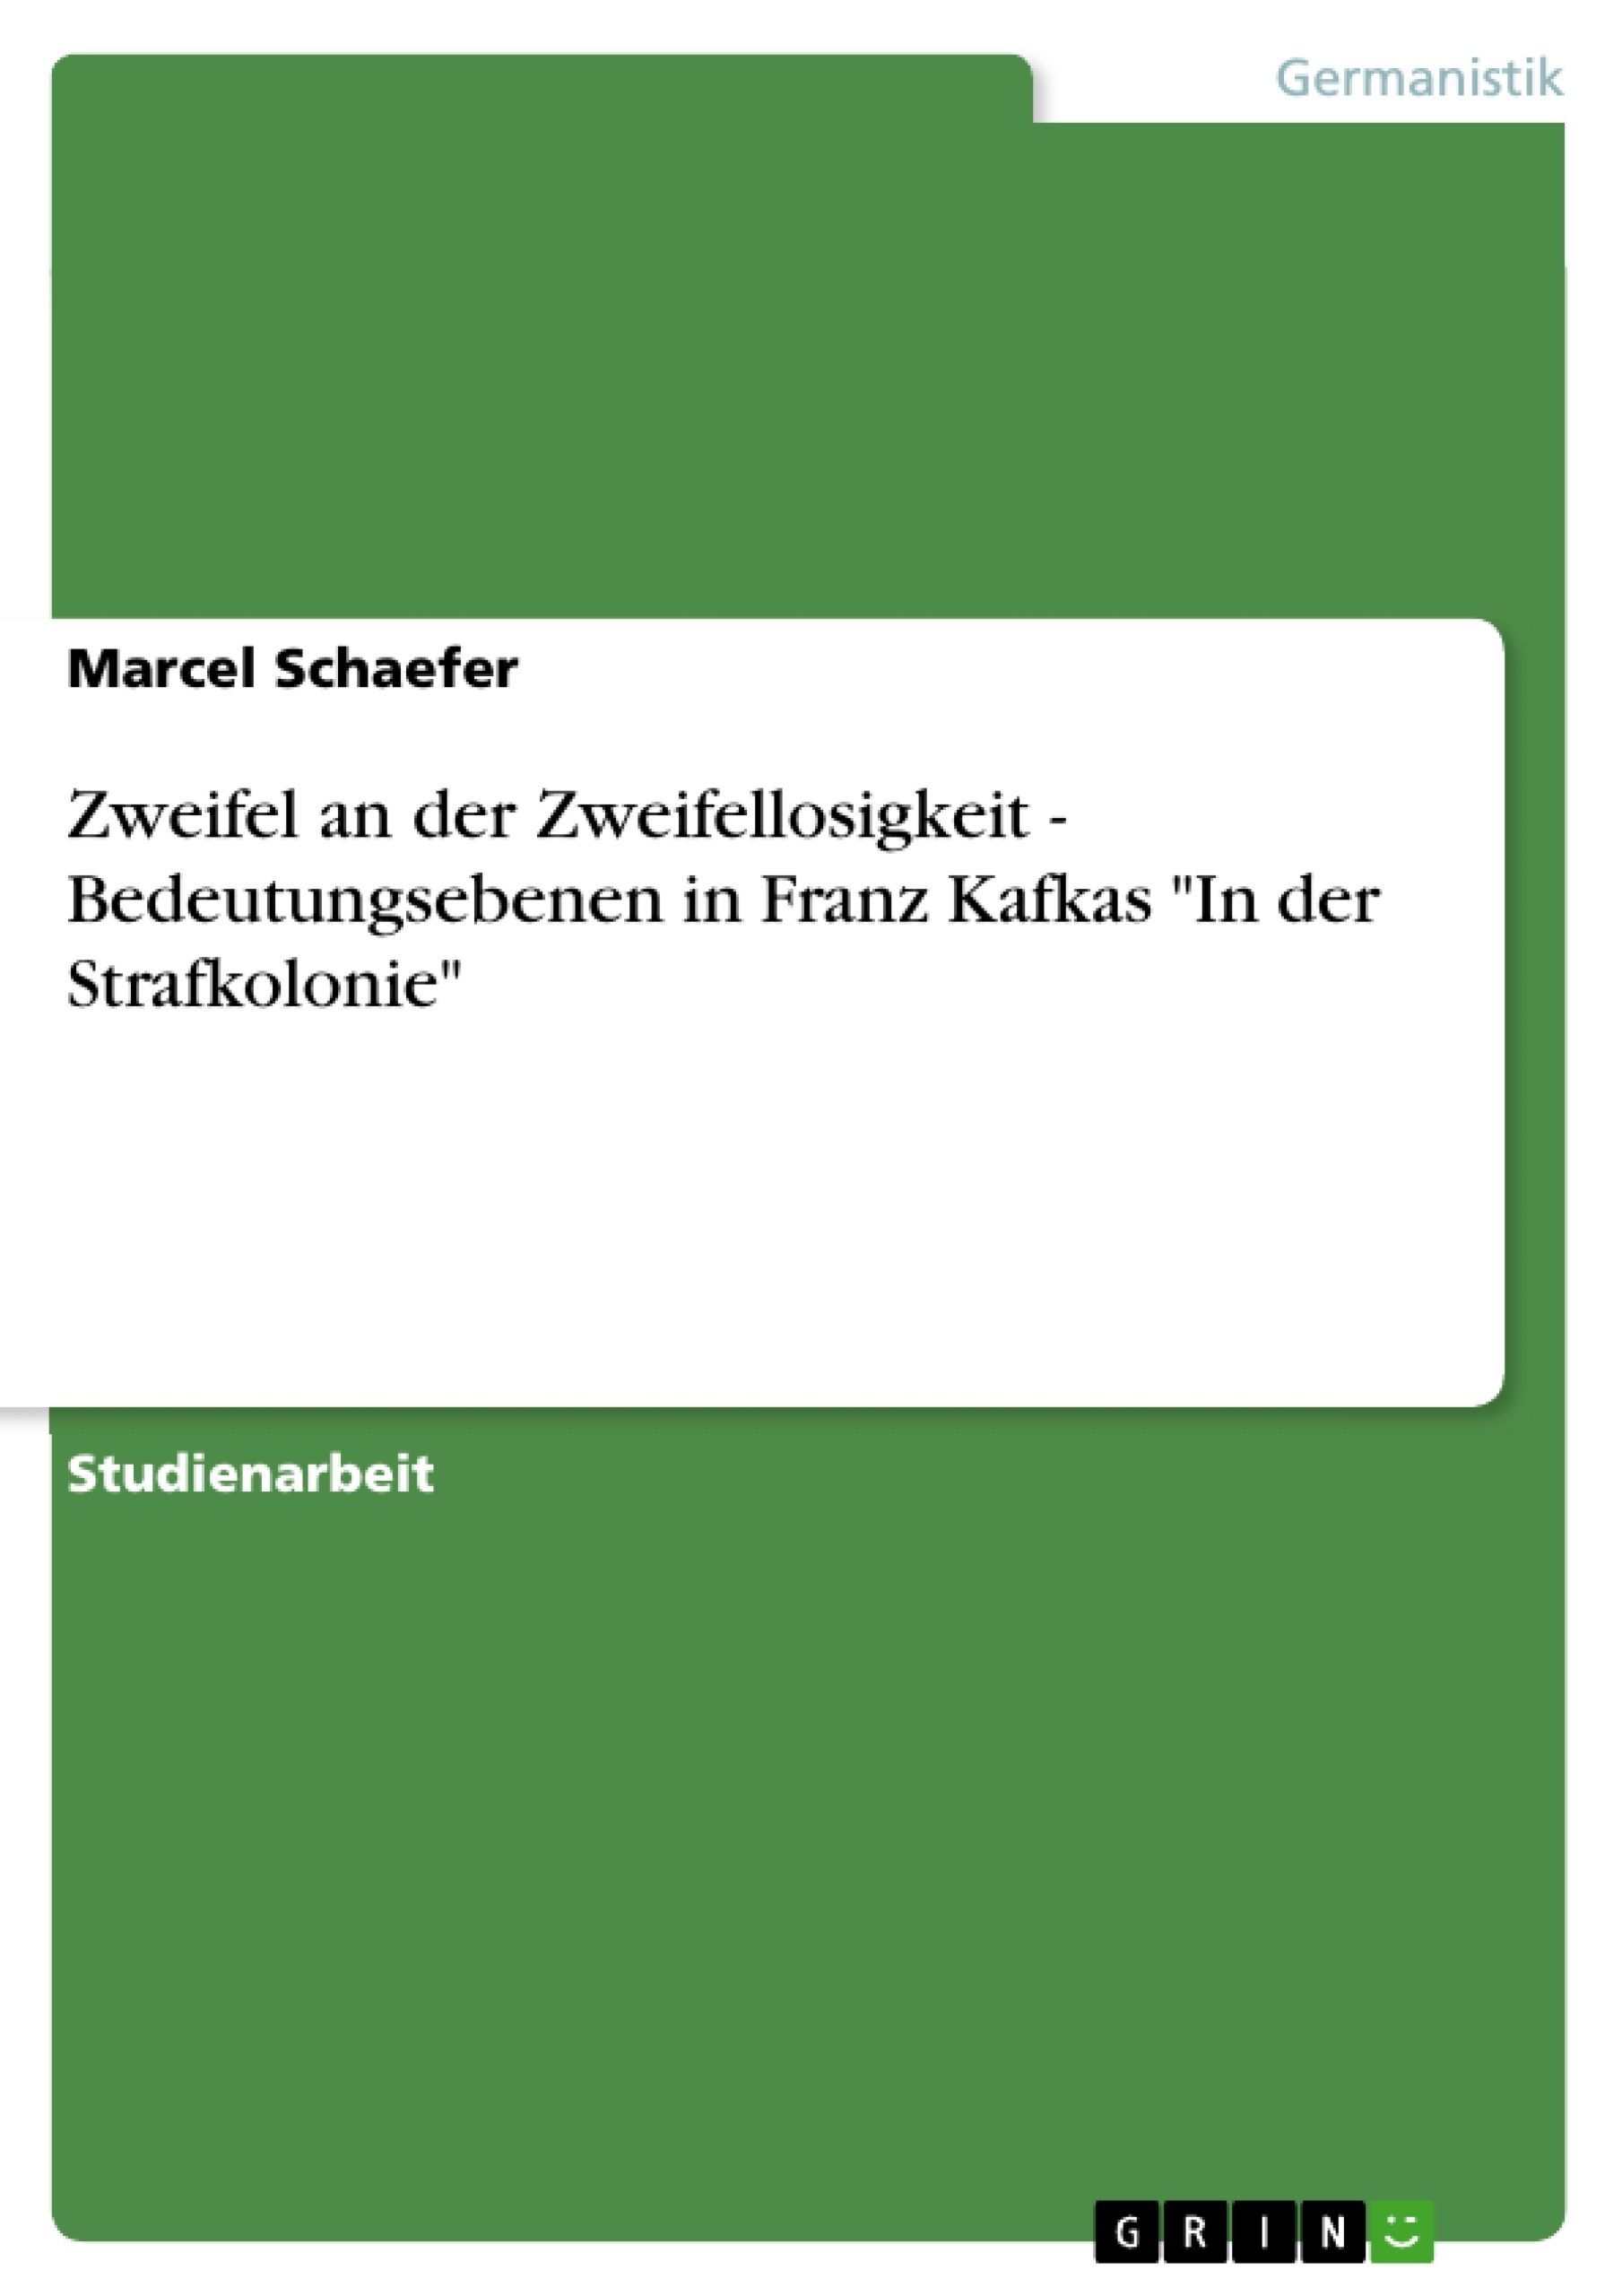 Titre: Zweifel an der Zweifellosigkeit - Bedeutungsebenen in Franz Kafkas "In der Strafkolonie"